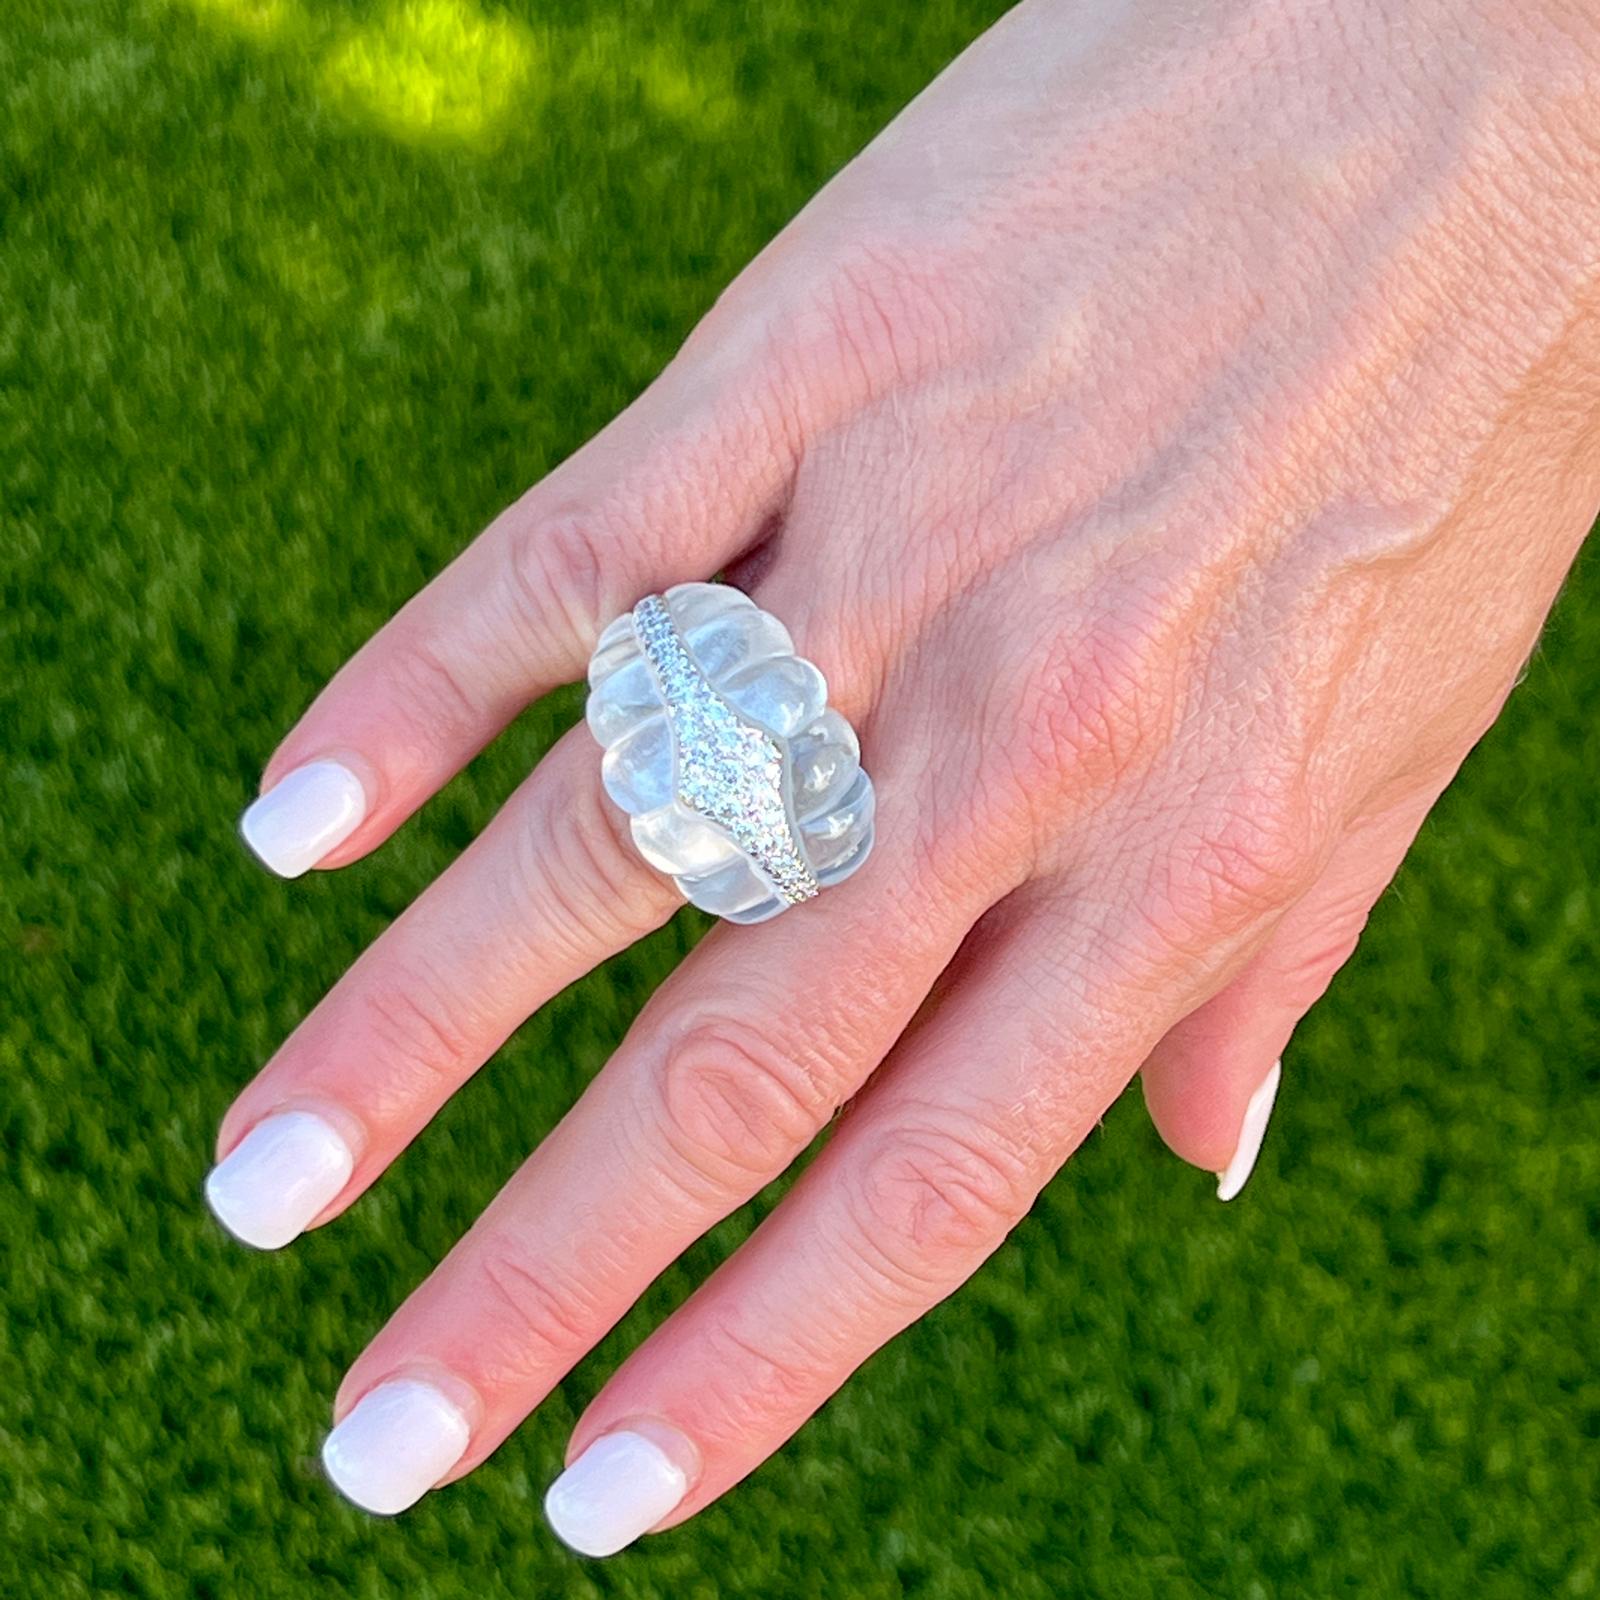 Fabuleuse bague de cocktail en diamant et cristal de roche de David Whiting, réalisée à la main en or blanc 18 carats et en platine. La bague de succession en forme de dôme est ornée d'une pierre précieuse en cristal de roche sculpté et de diamants